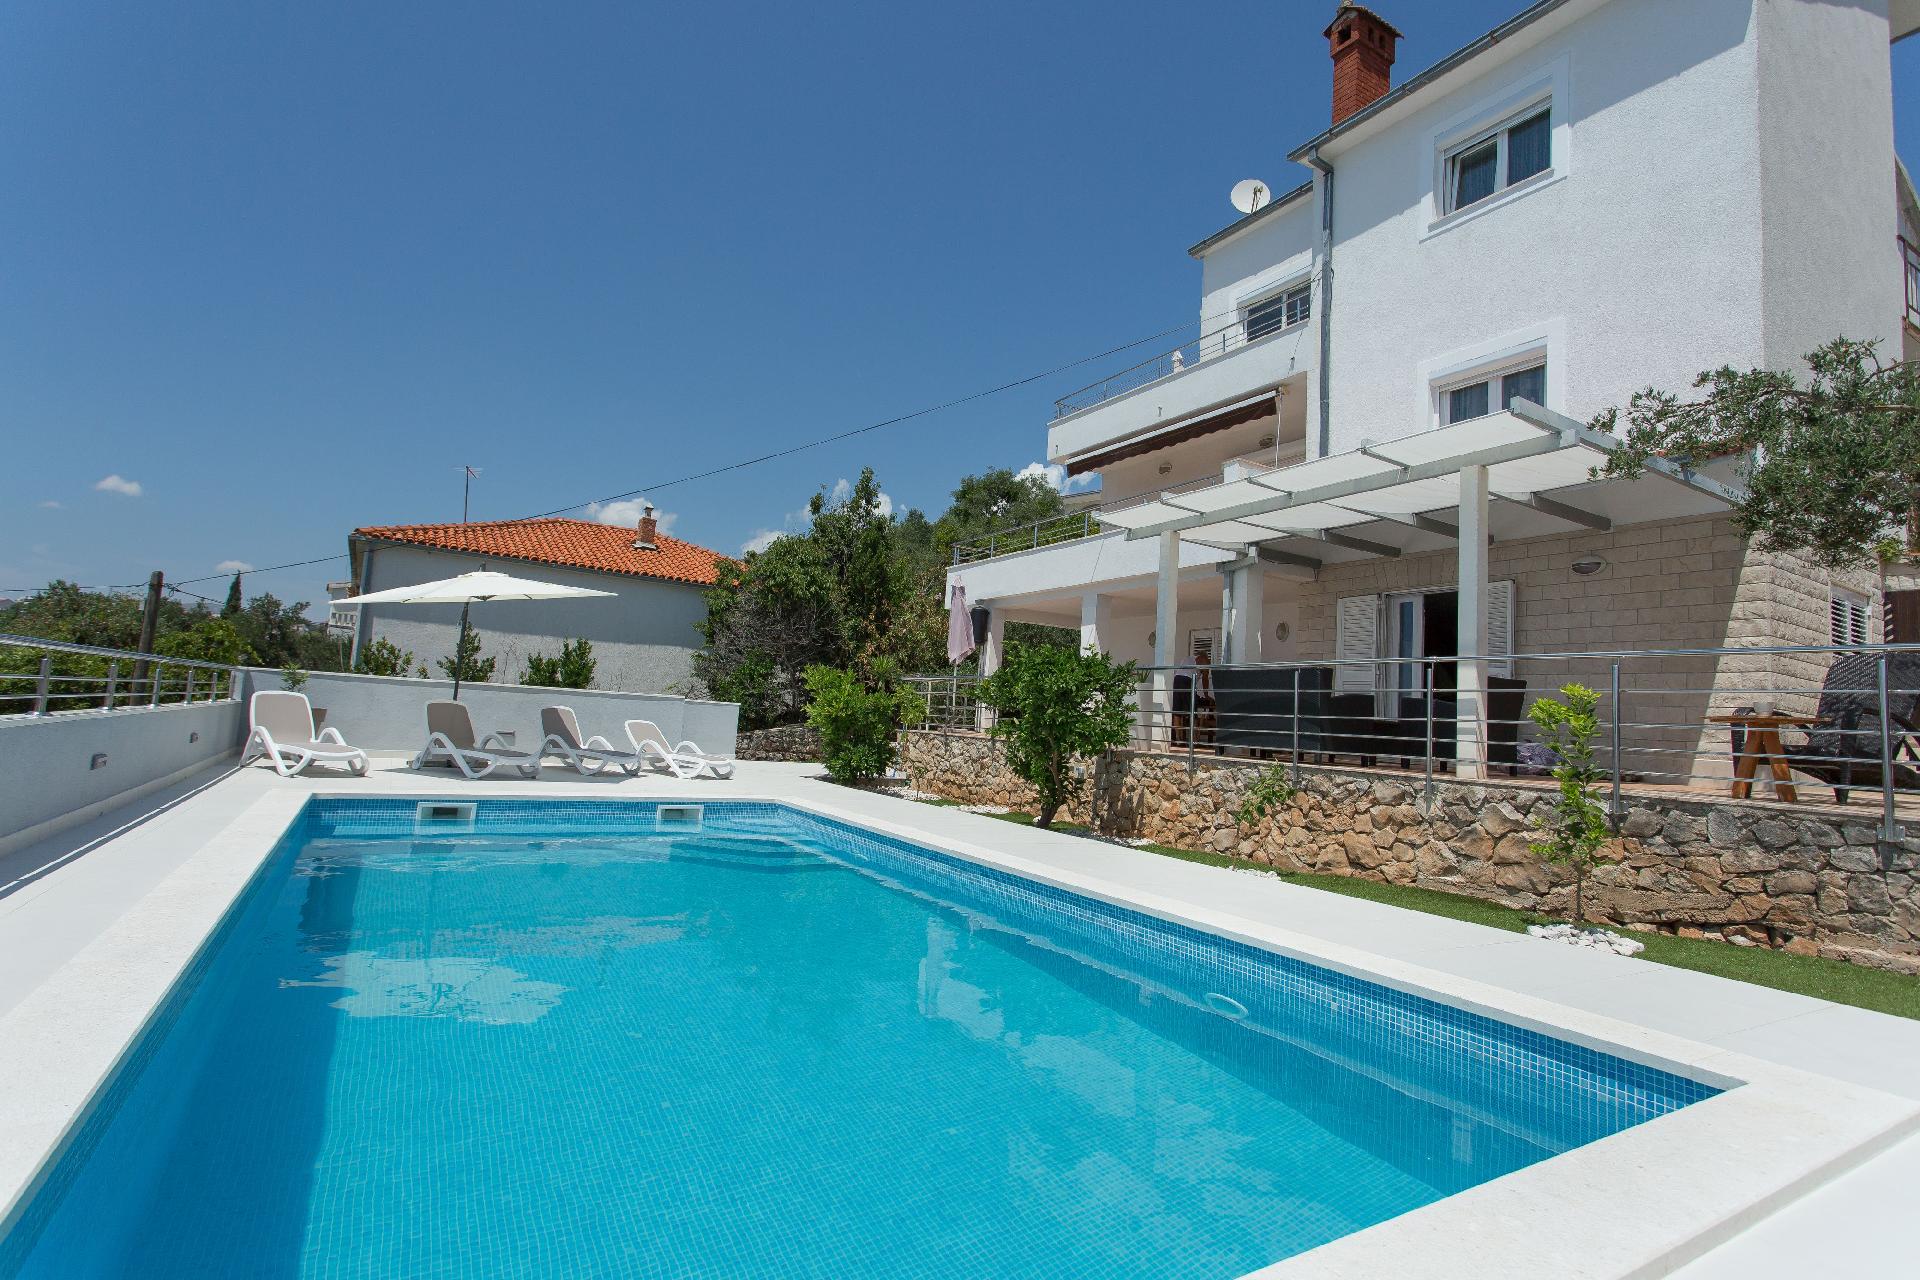 Ferienwohnung für 5 Personen ca. 65 m² i Ferienwohnung in Kroatien